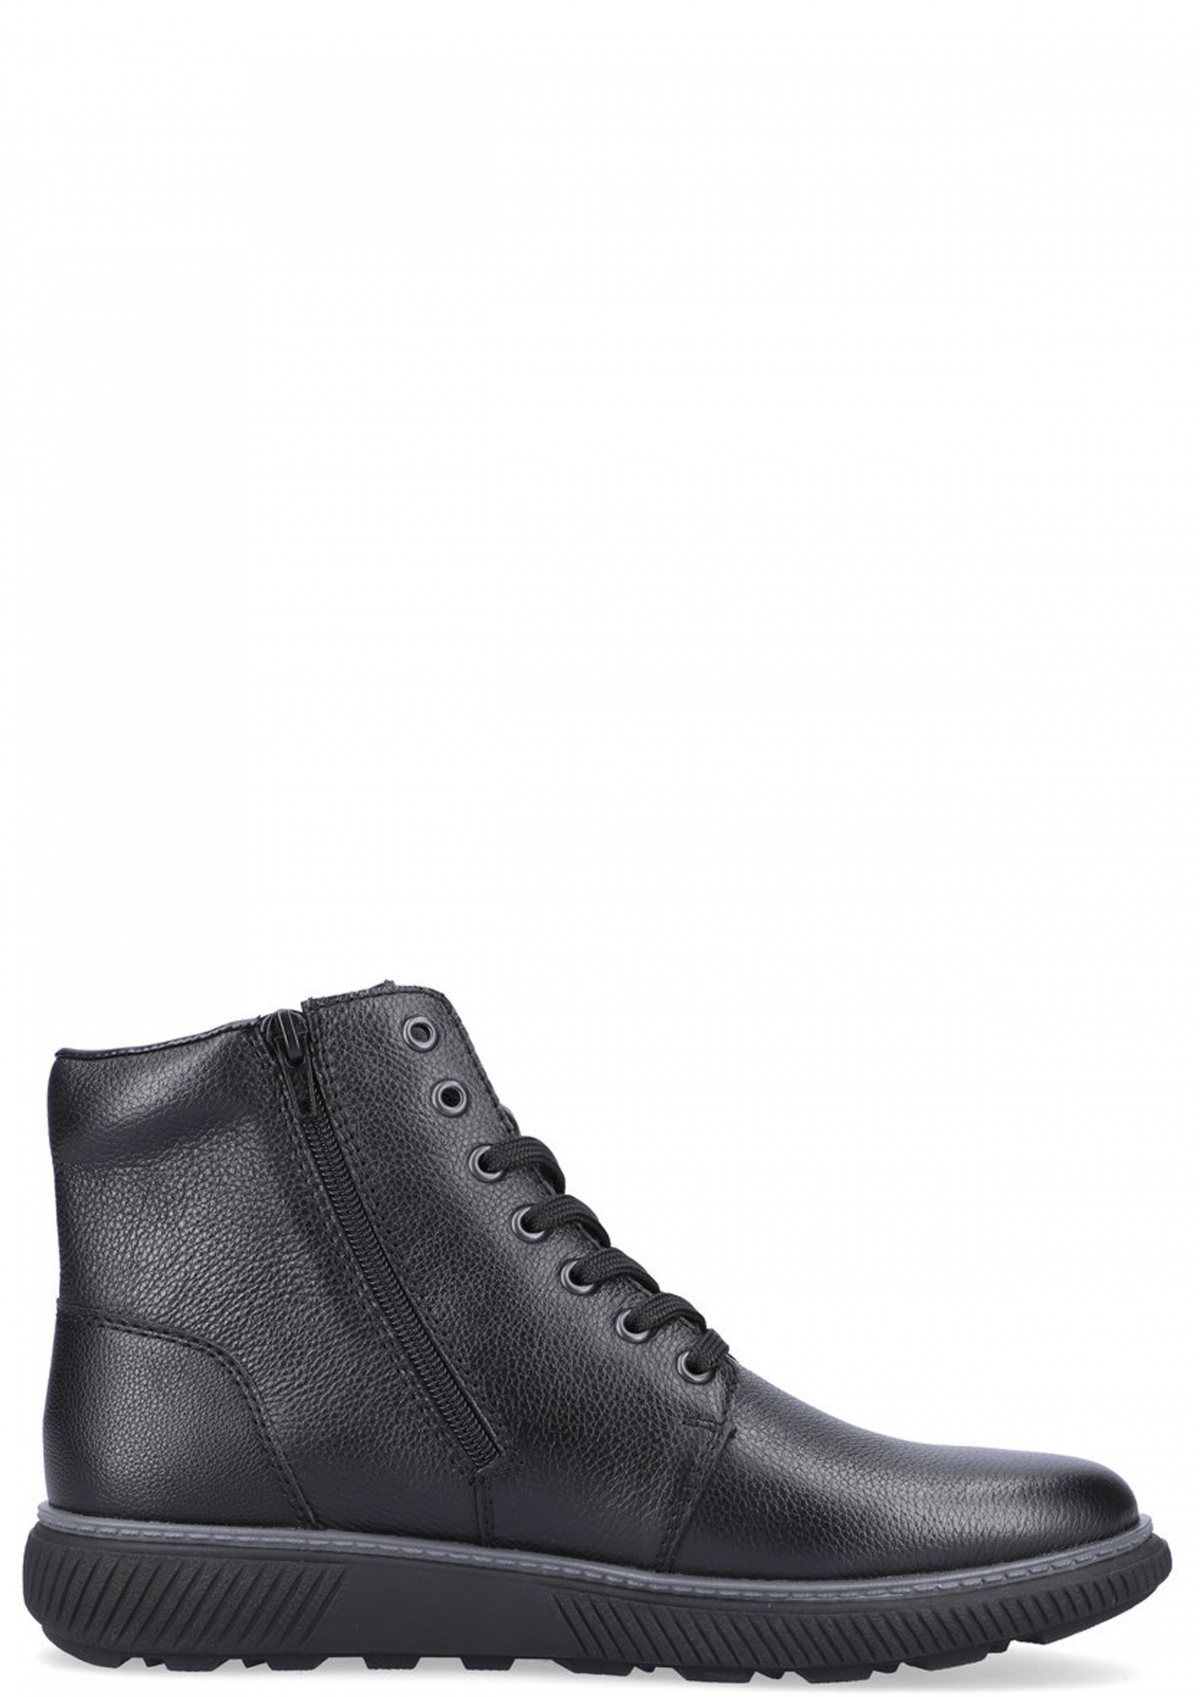 Rieker B3306-00 мужские ботинки